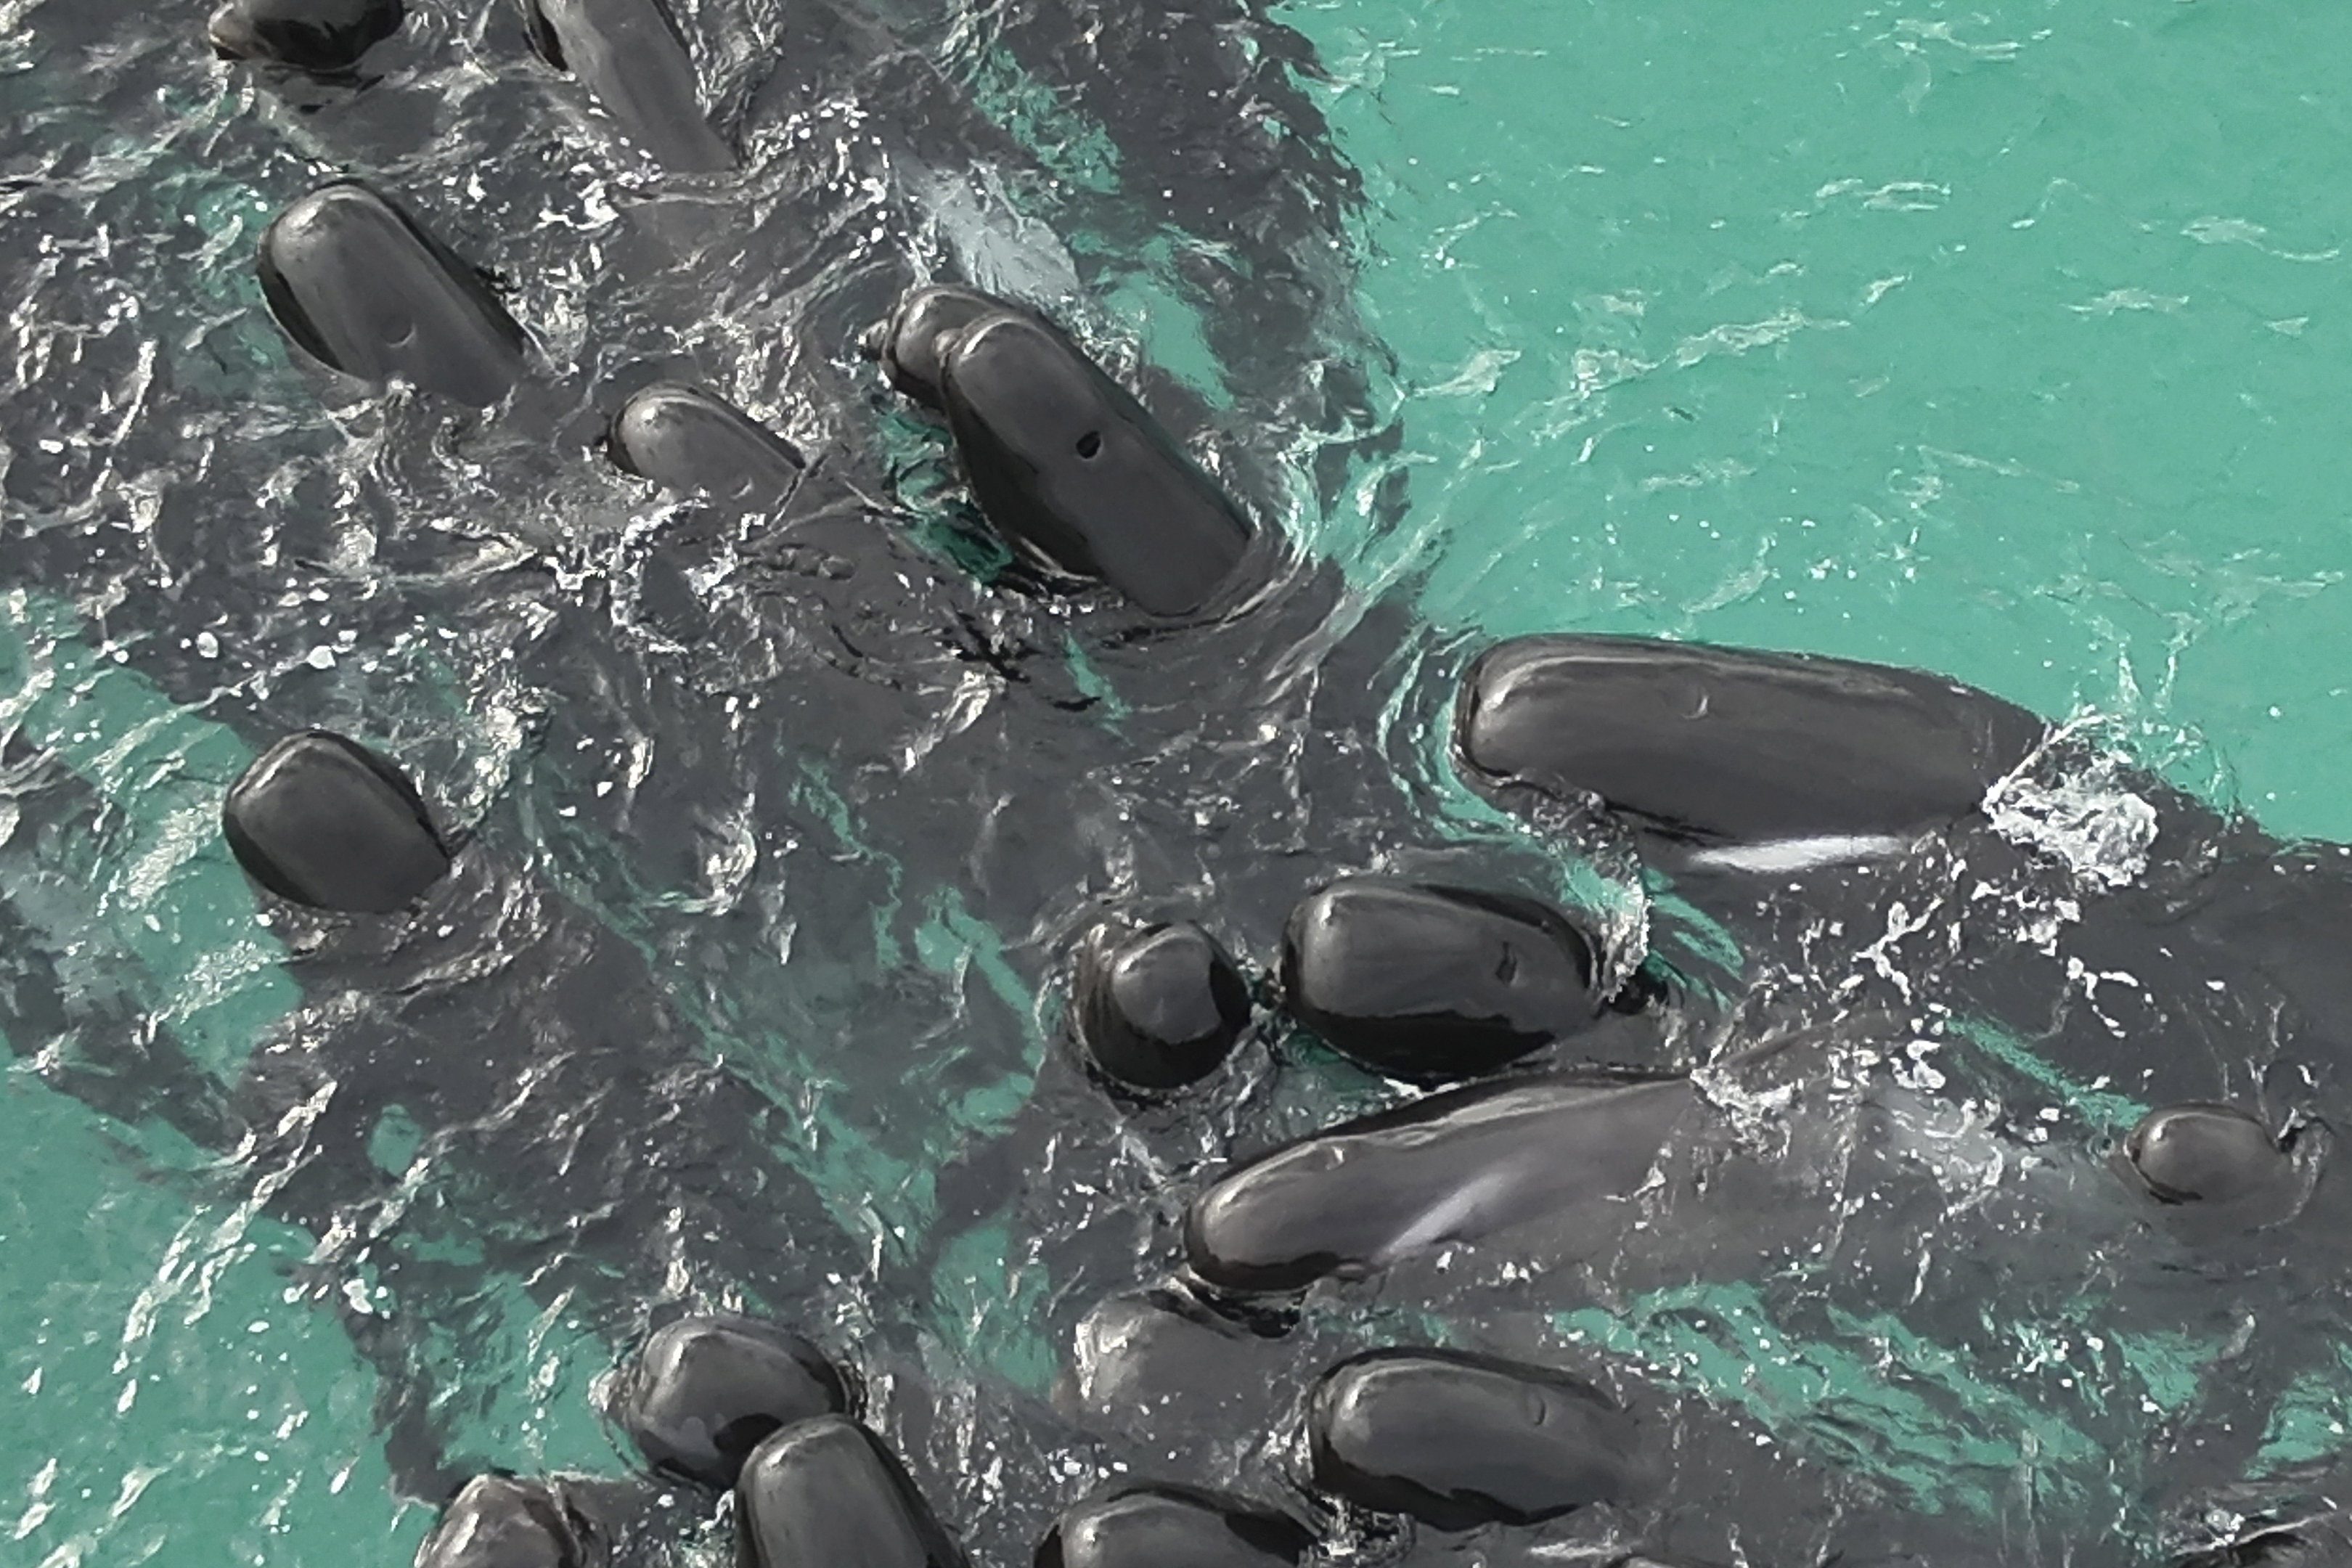 Al menos 51 ballenas piloto murieron tras quedar varadas en una playa de Australia